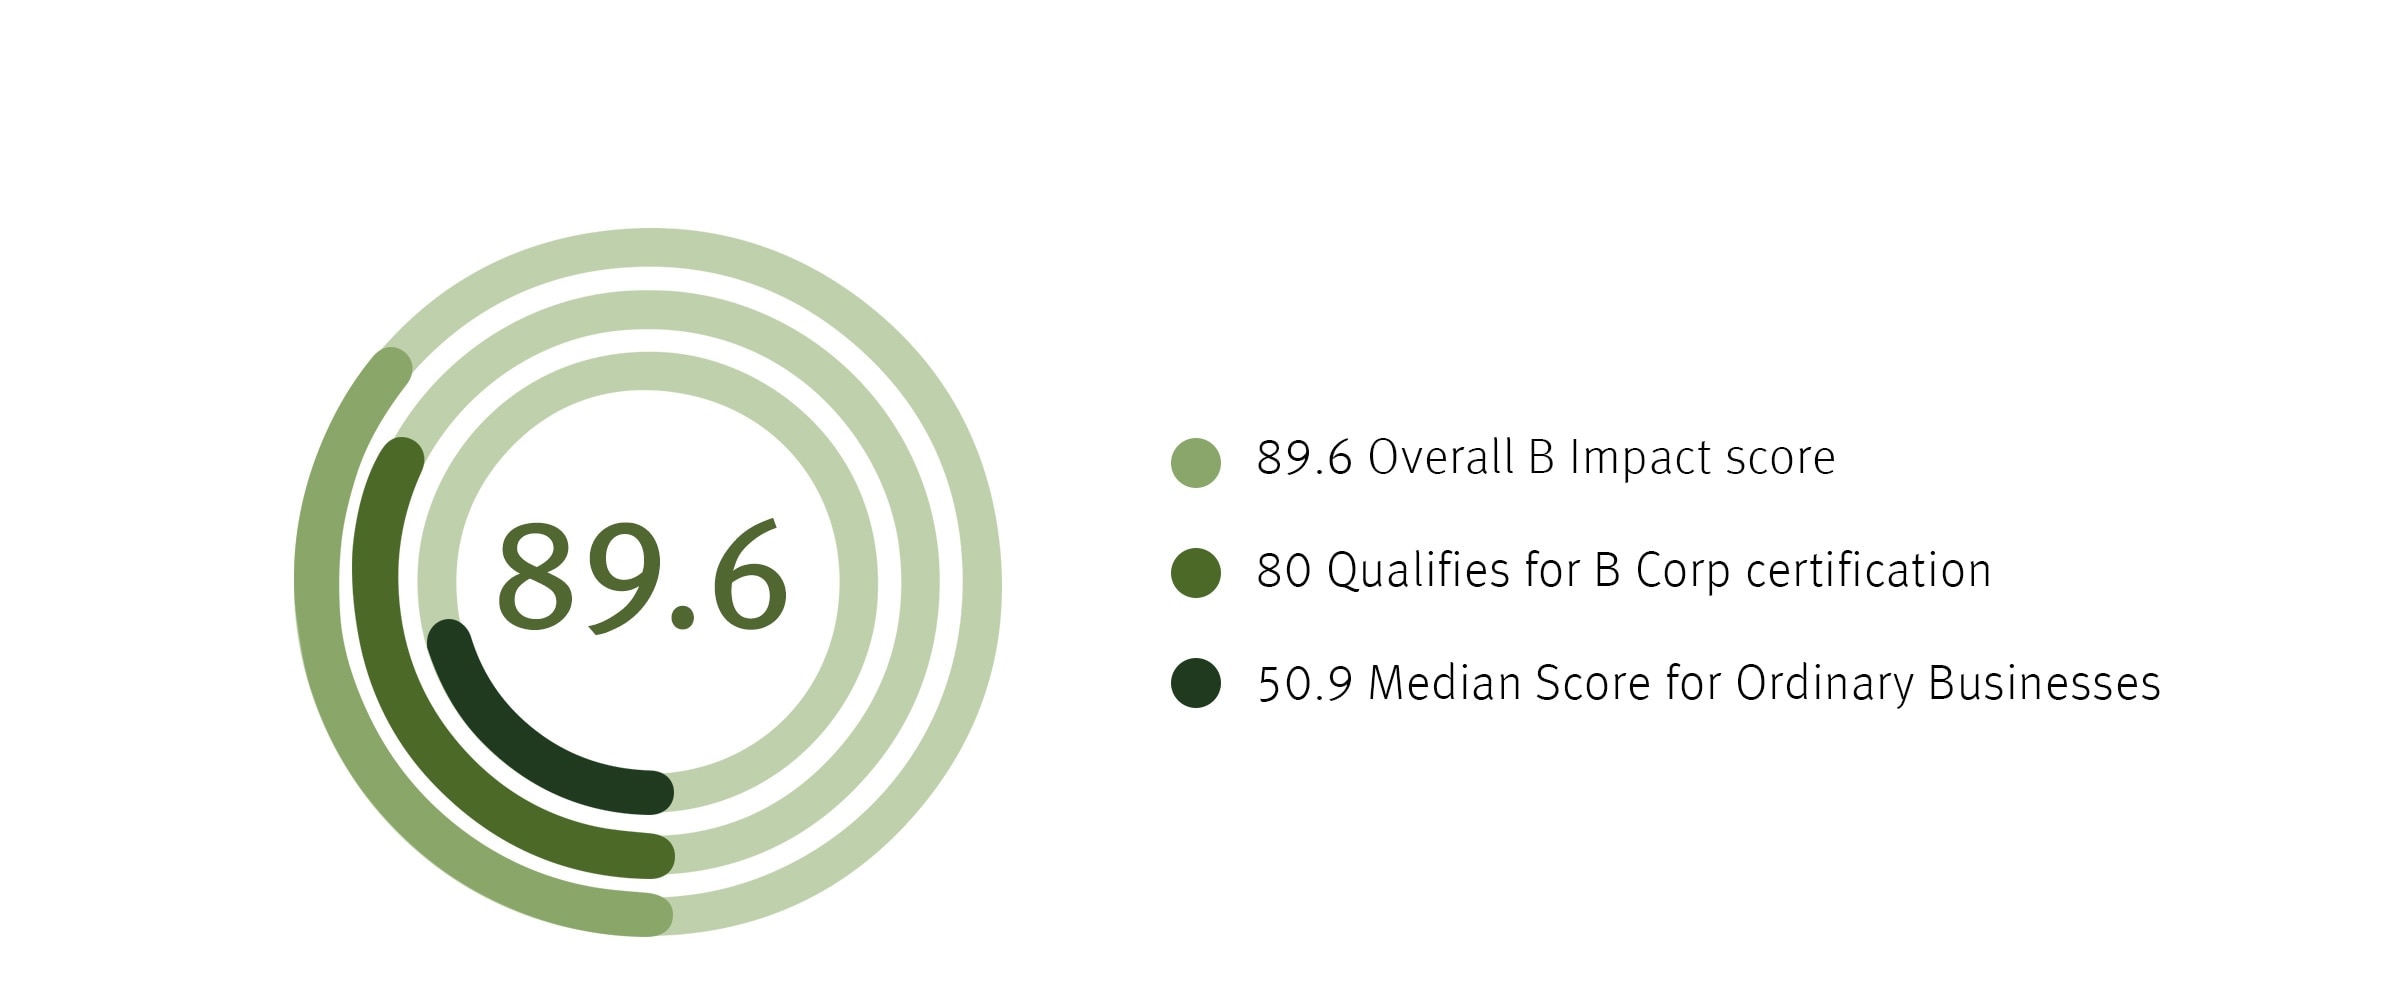 Le score global de l'évaluation B Impact d'Aveda est de 89,6